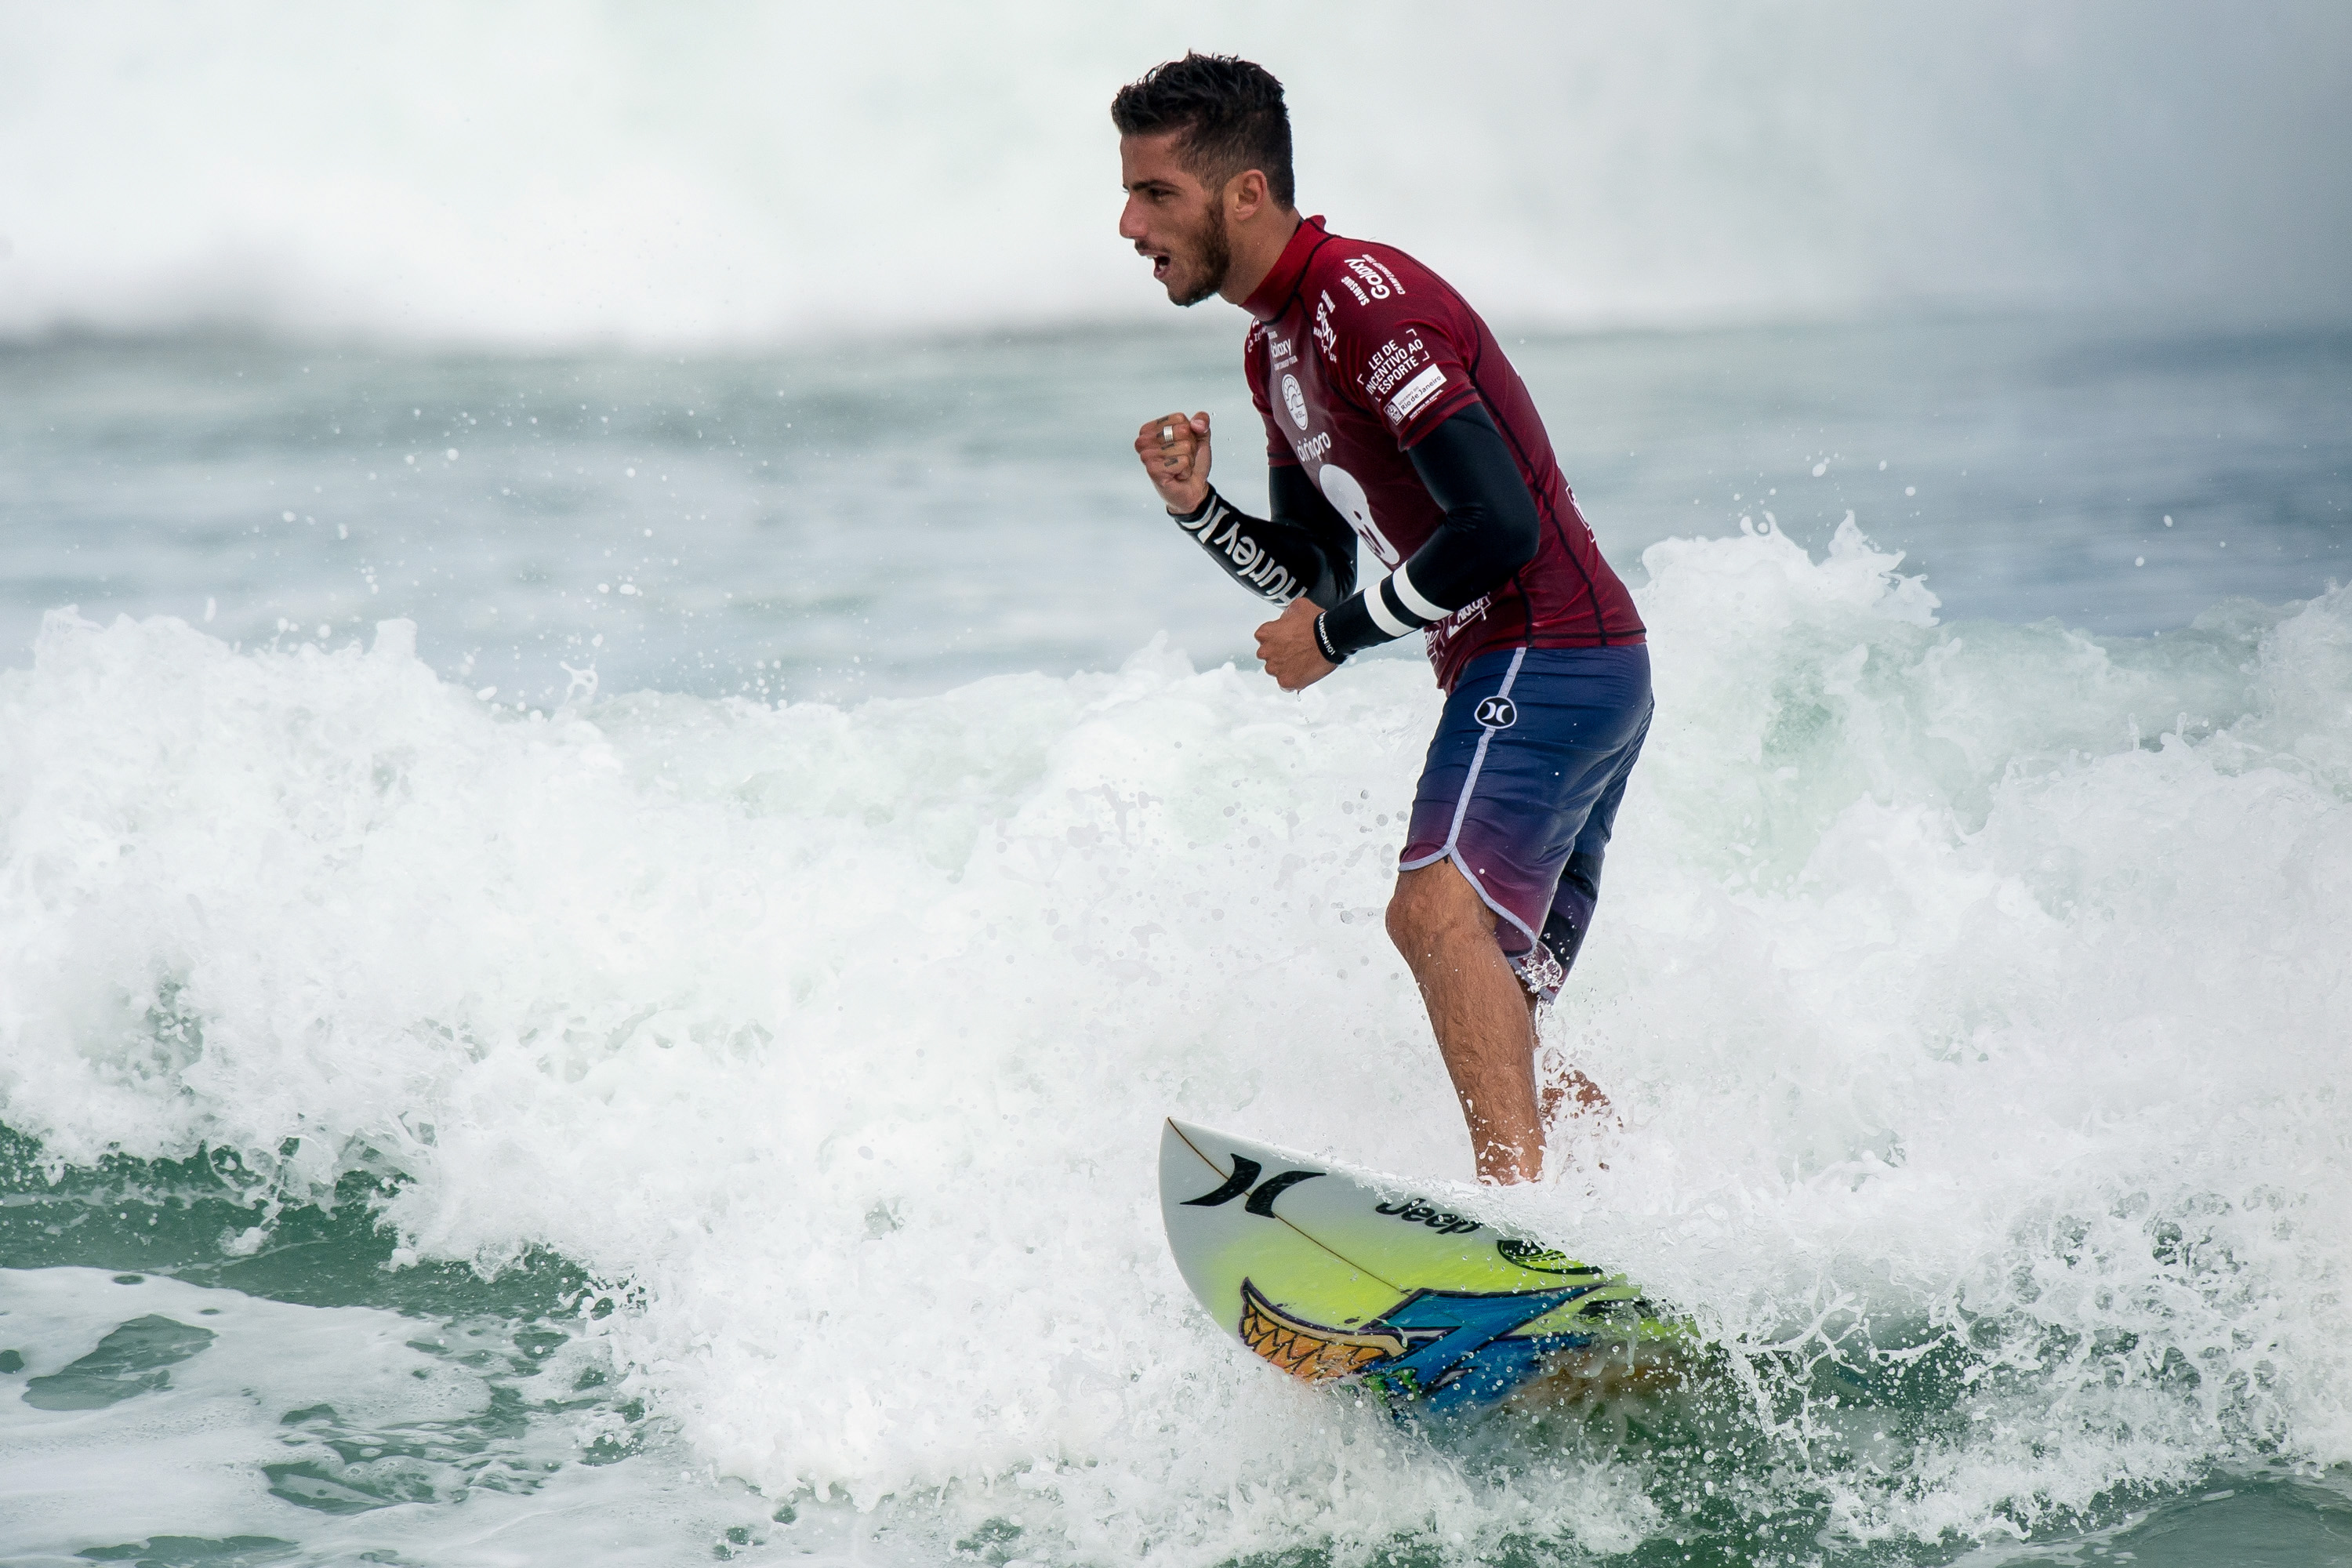 Australian, Brazilian surfers dominate Rio Pro